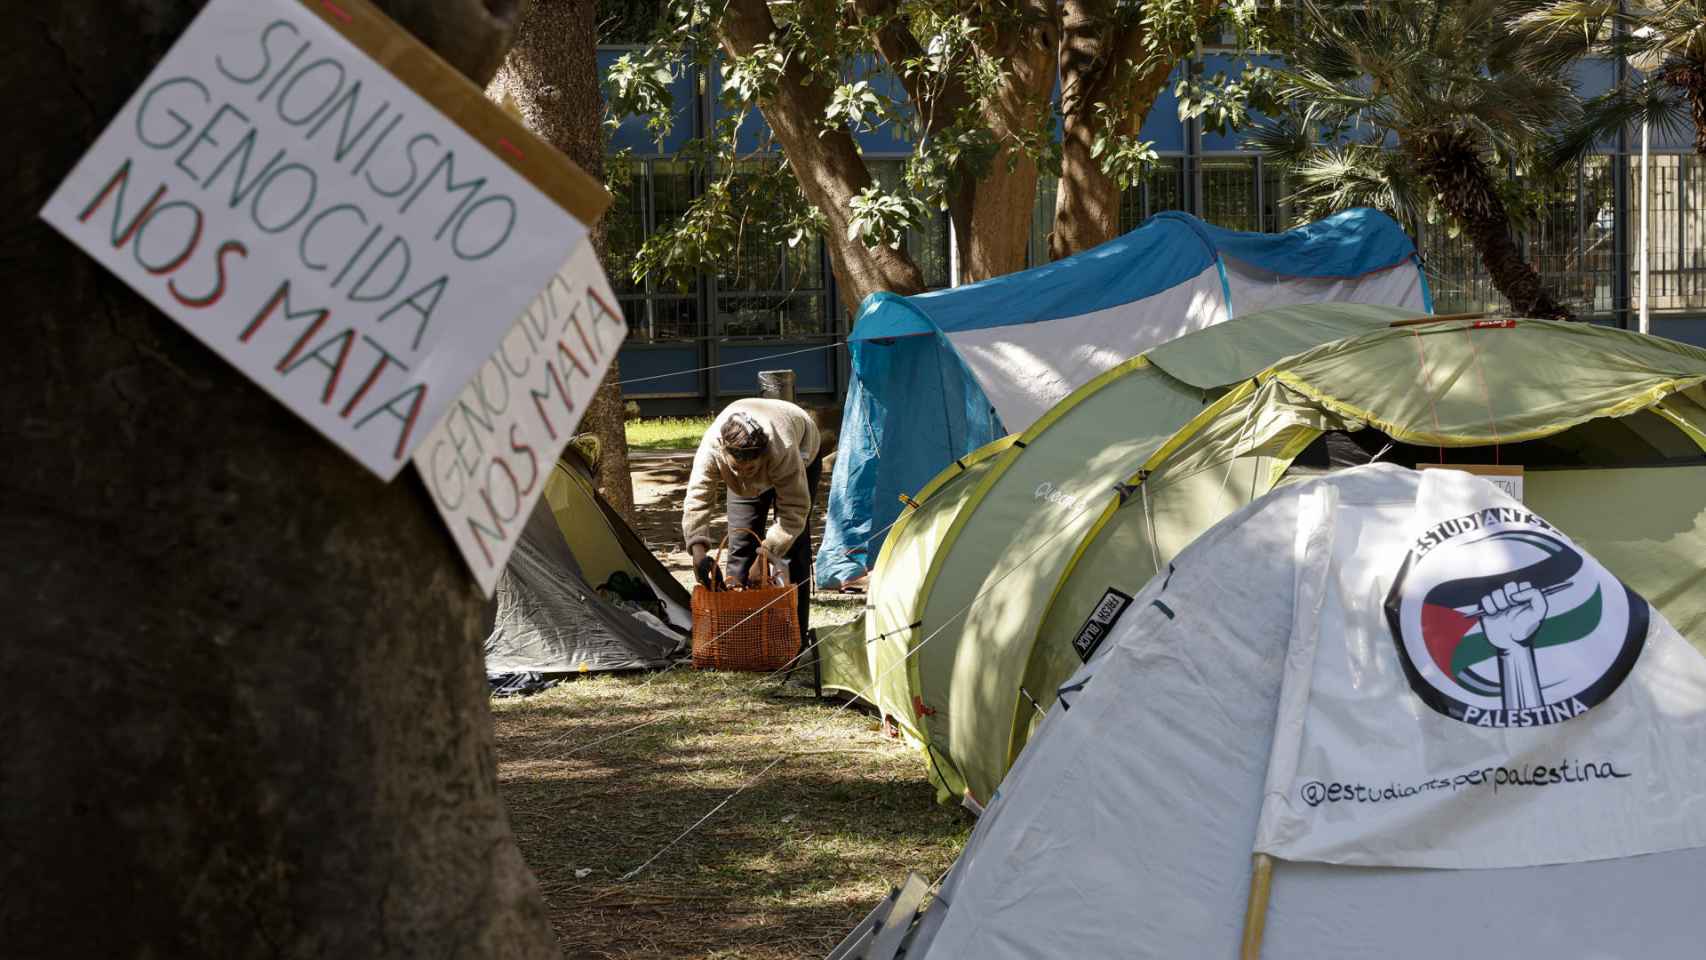 Imagen de la acampada en la Universidad de valencia, iniciada el pasado 29 de abril.